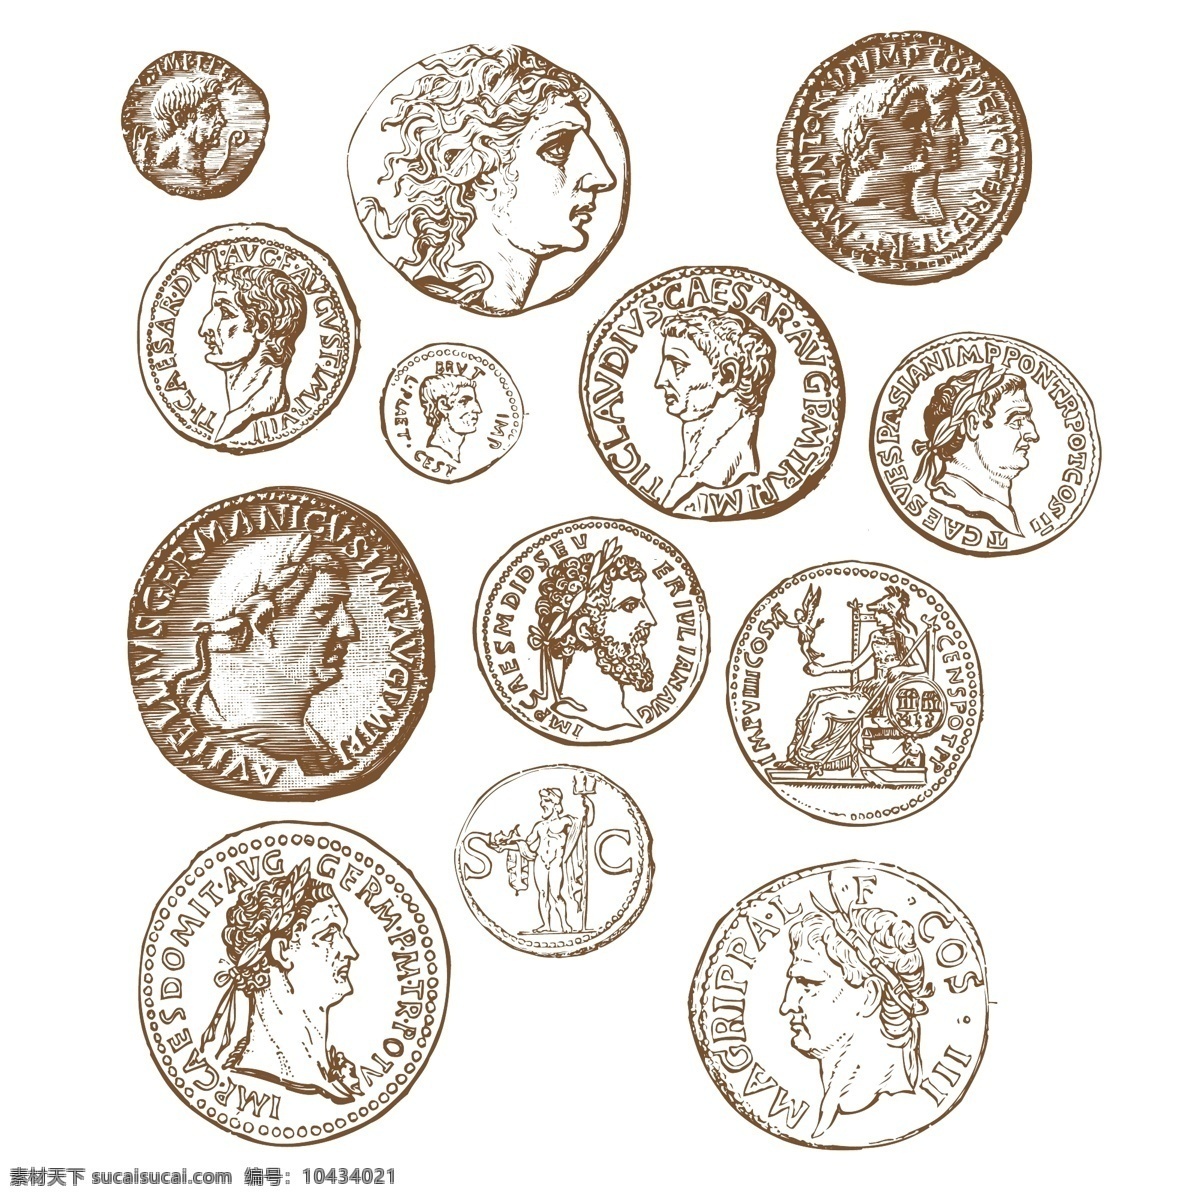 欧洲 古代 硬币 环境设计 建筑设计 欧洲古代硬币 古典硬币 古代钱币 古代硬币 欧洲货币 欧洲硬币 欧洲钱币 家居装饰素材